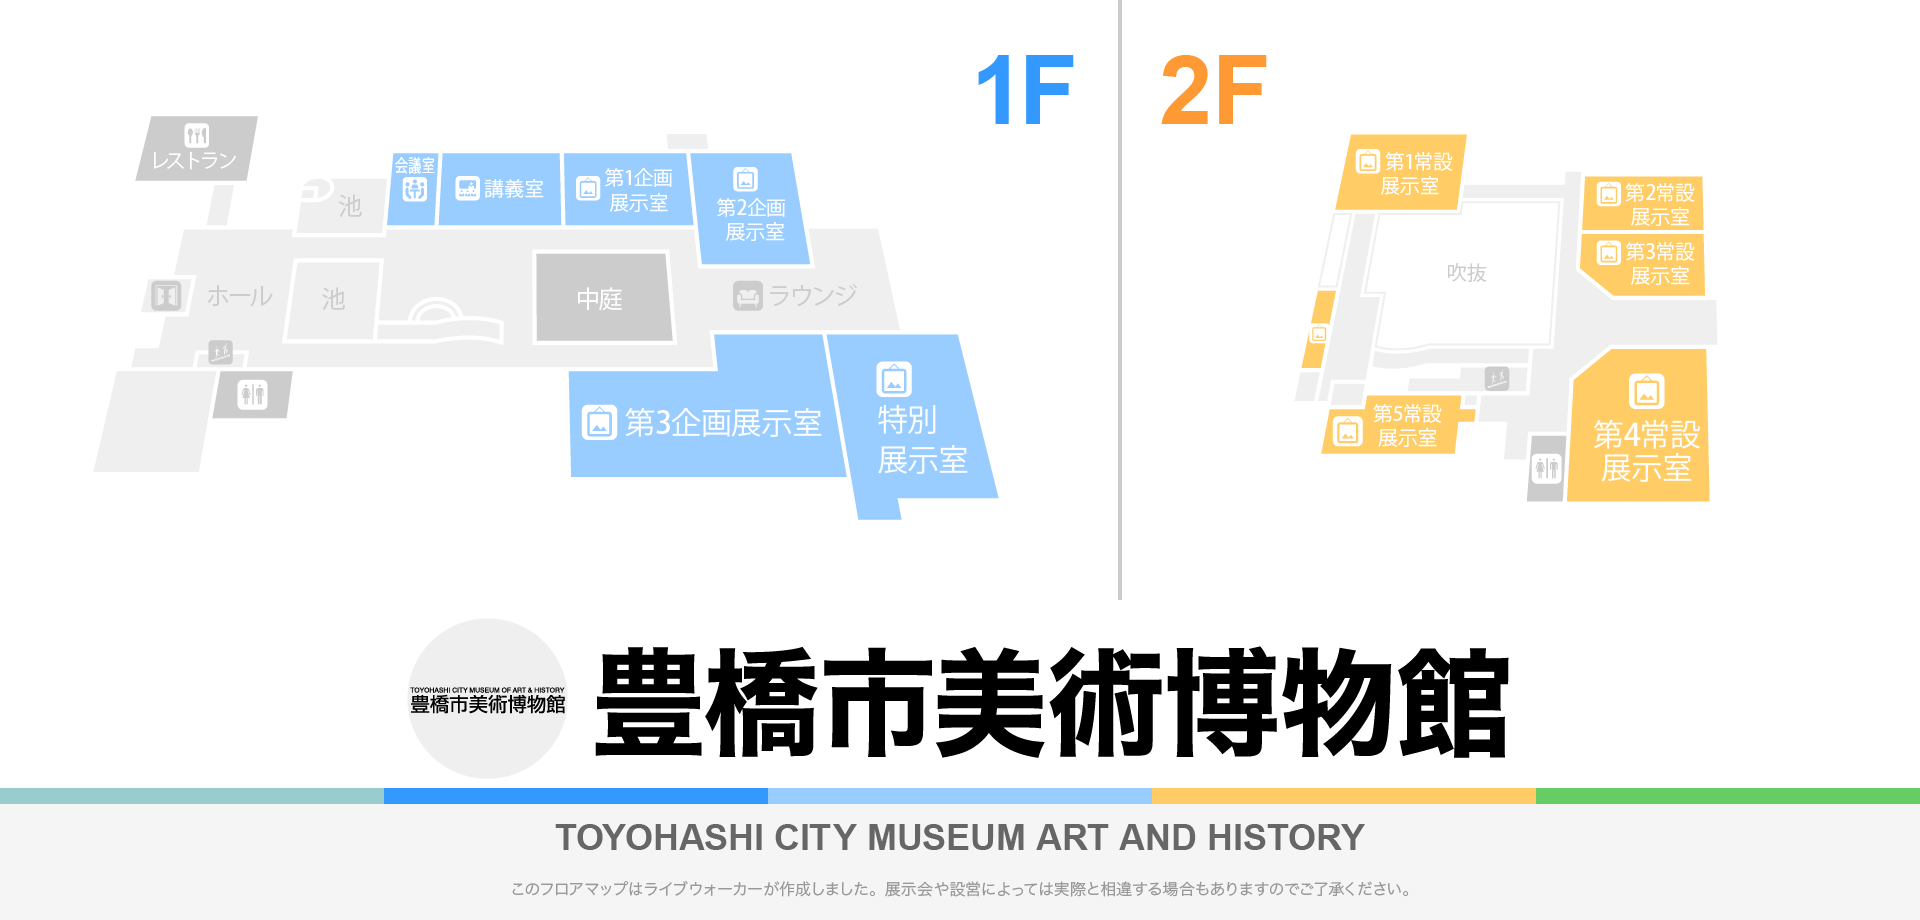 豊橋市美術博物館のフロアマップ